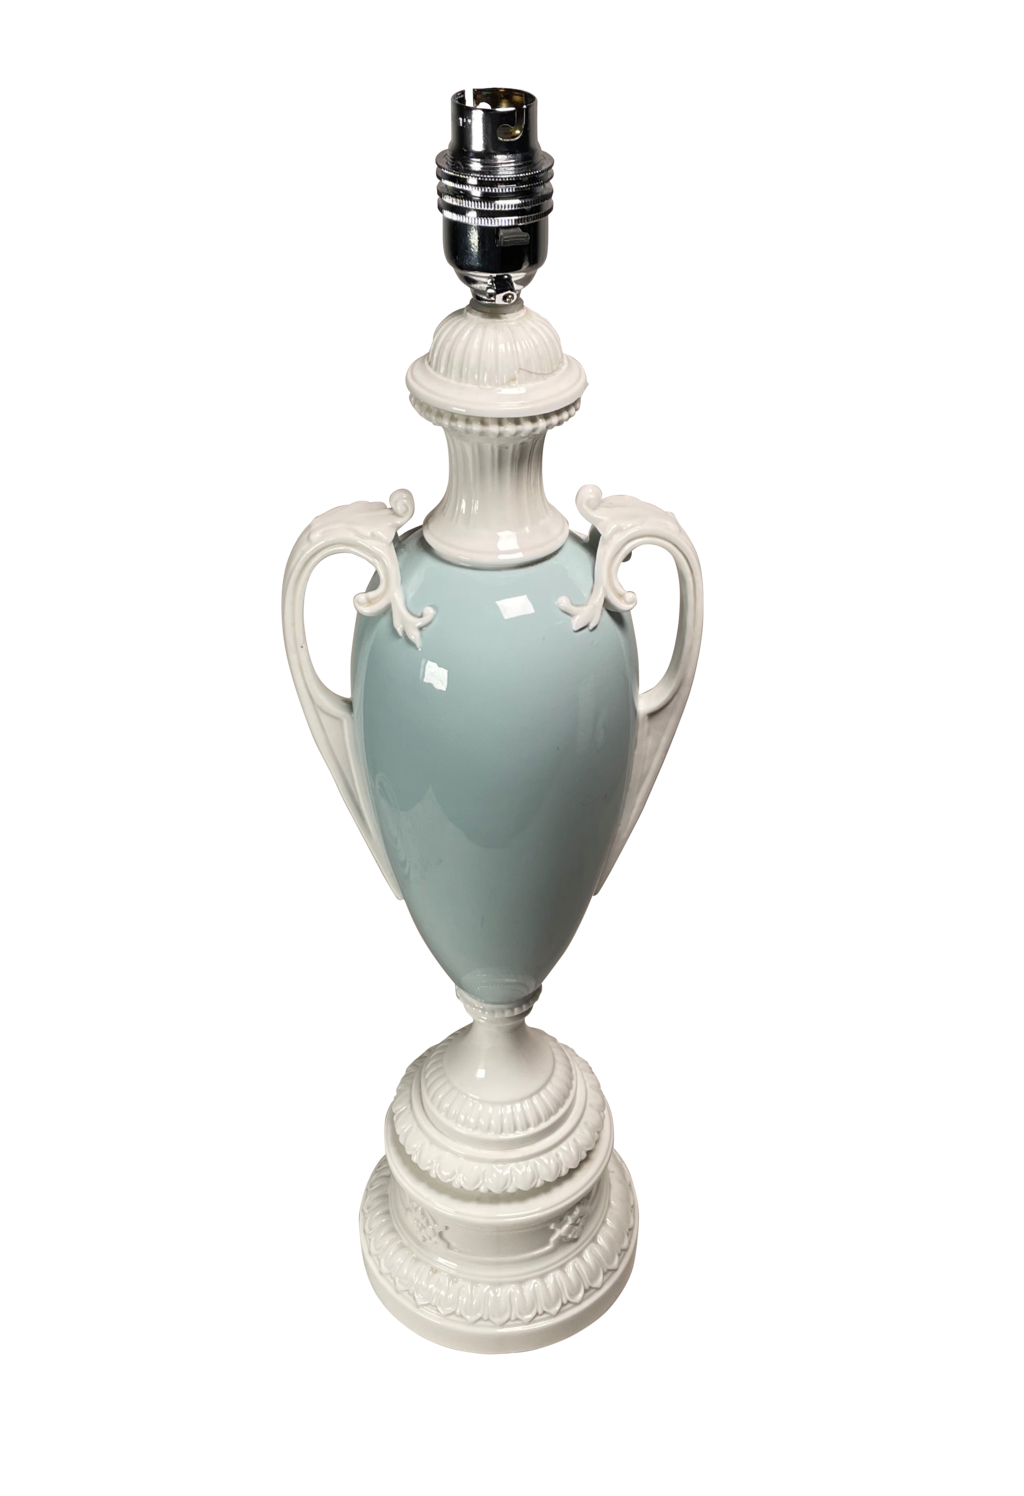 Royal Worcester Vase Lamp